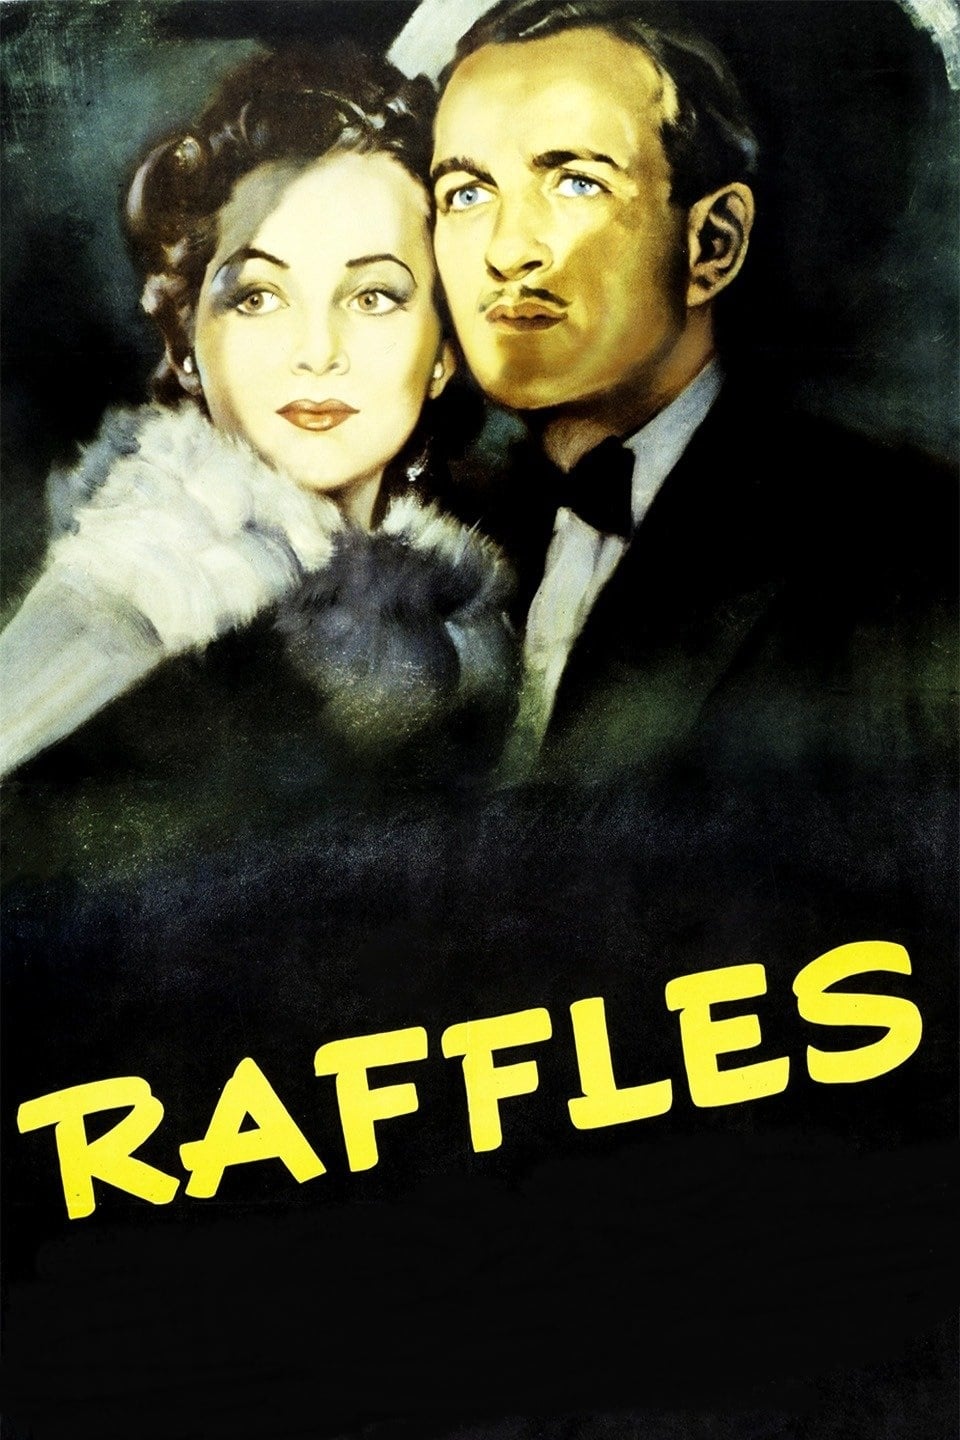 Raffles, gentleman cambrioleur (1939)